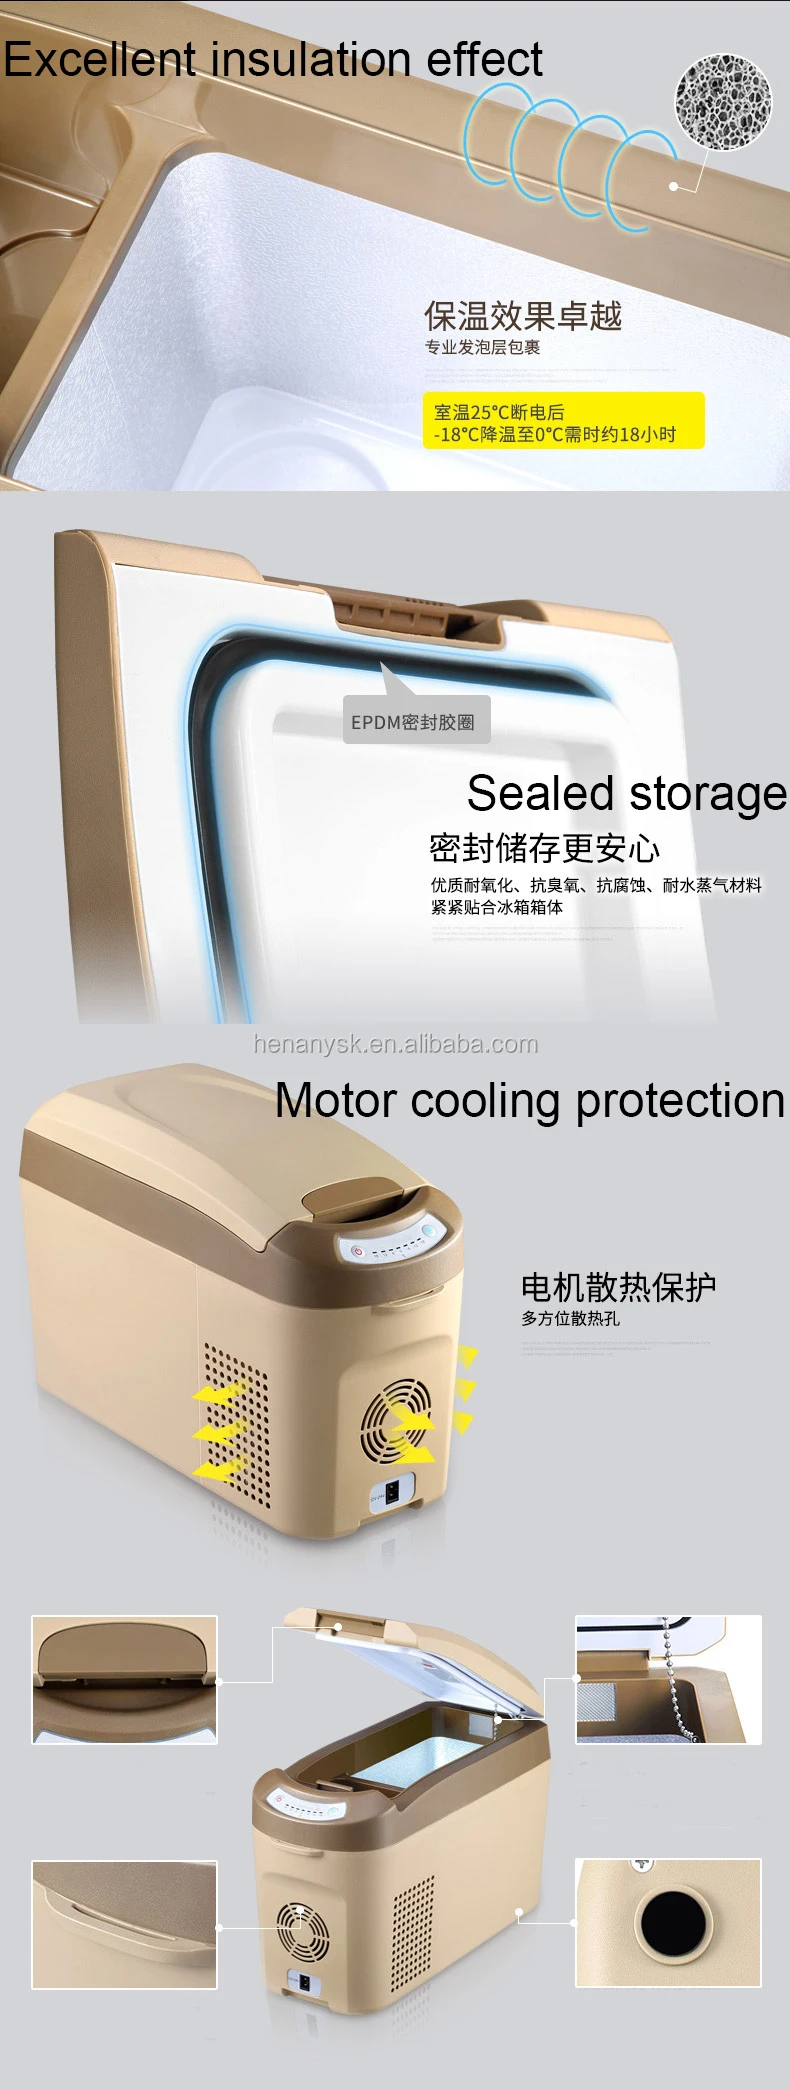 Car Home Dual Purpose Compressor Mini Car Portable Fridge Freezer Refrigerator